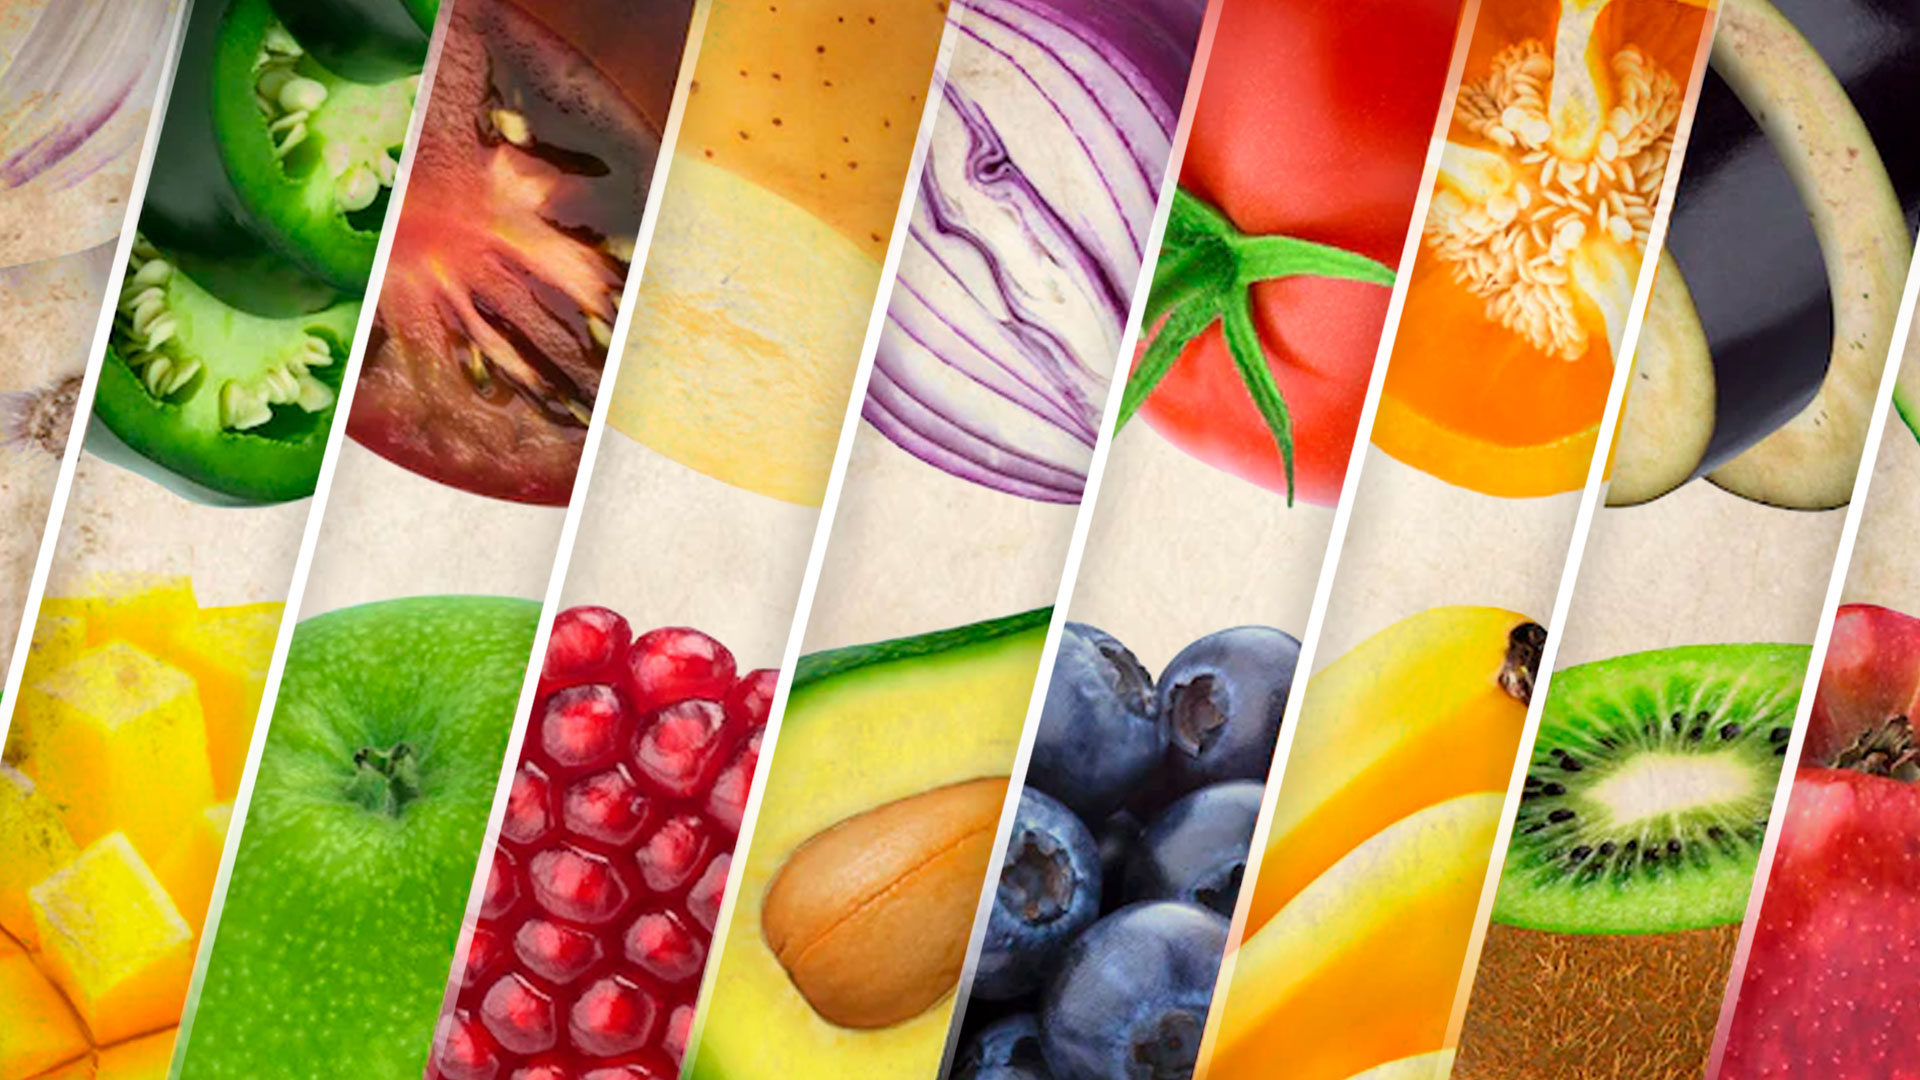 La fresa es una de las frutas más consumidas a nivel mundial. (Infobae)